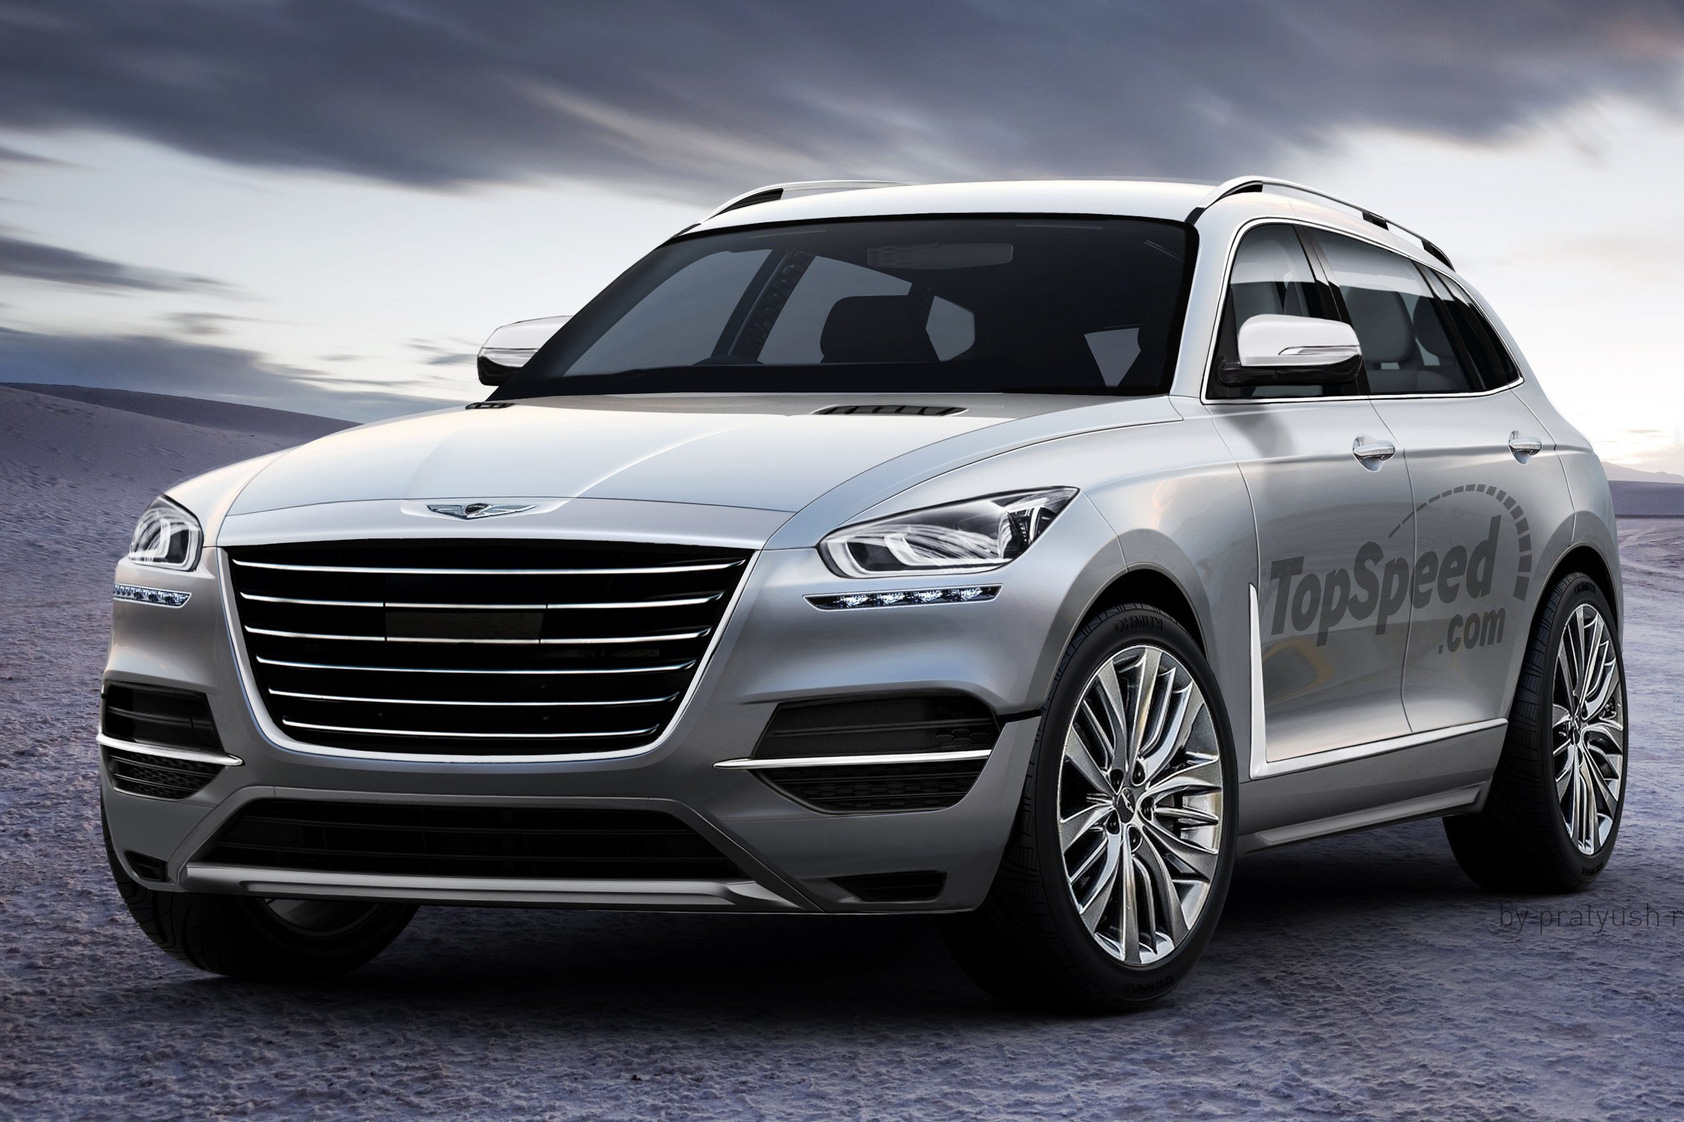 SUV Genesis hoàn toàn mới xuất hiện - Lời đáp trả Mercedes-Benz và Audi ở phân khúc xe điện